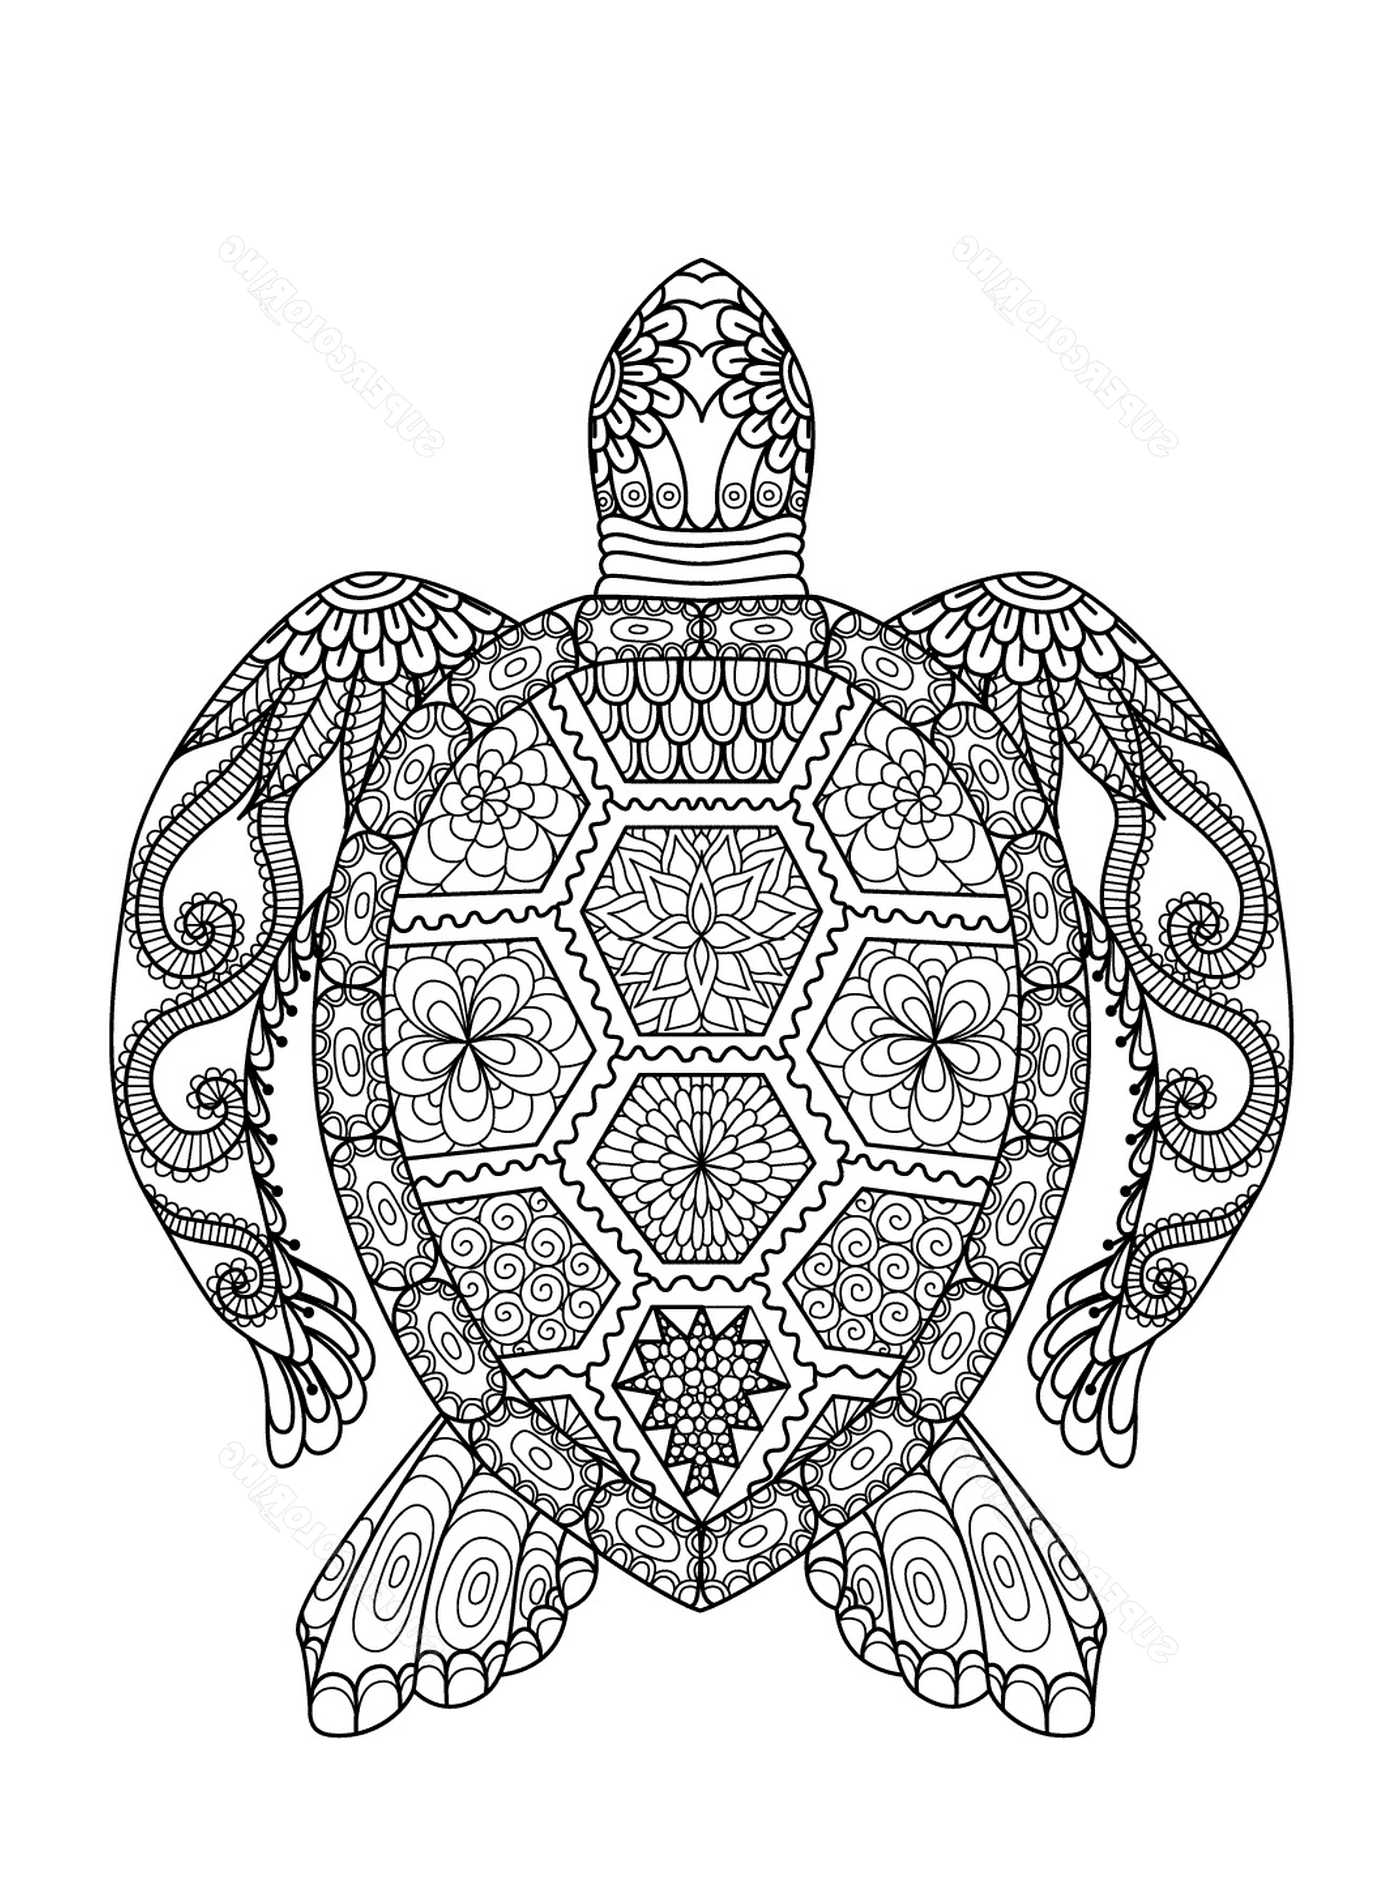  Tartaruga marinha com padrões elaborados 